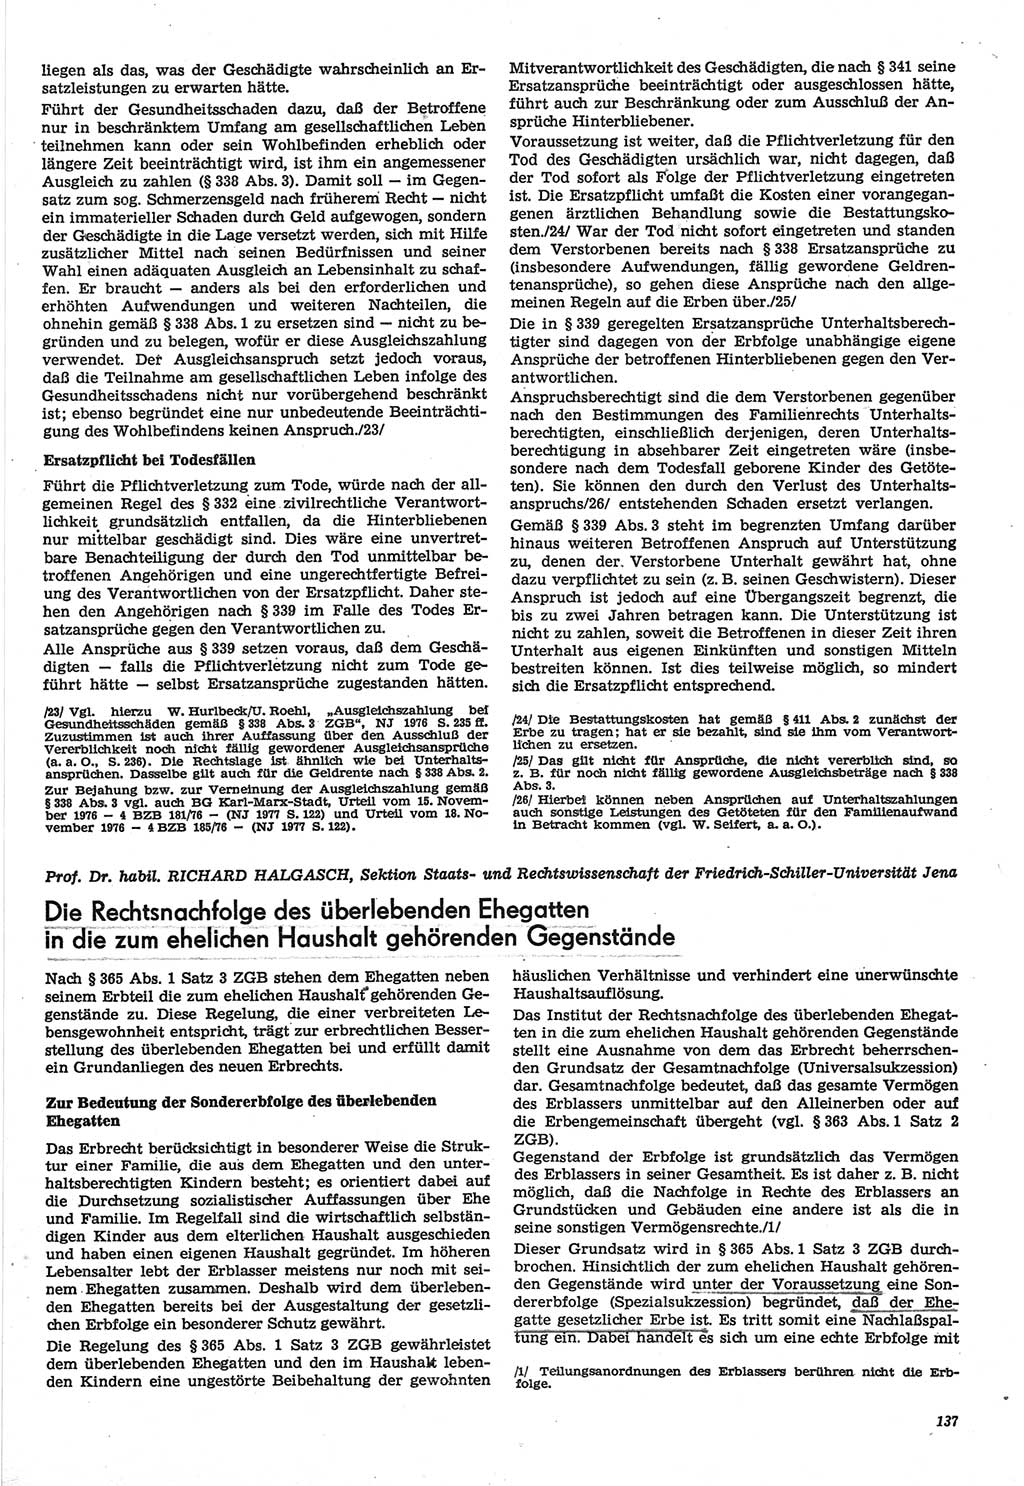 Neue Justiz (NJ), Zeitschrift für Recht und Rechtswissenschaft-Zeitschrift, sozialistisches Recht und Gesetzlichkeit, 31. Jahrgang 1977, Seite 137 (NJ DDR 1977, S. 137)